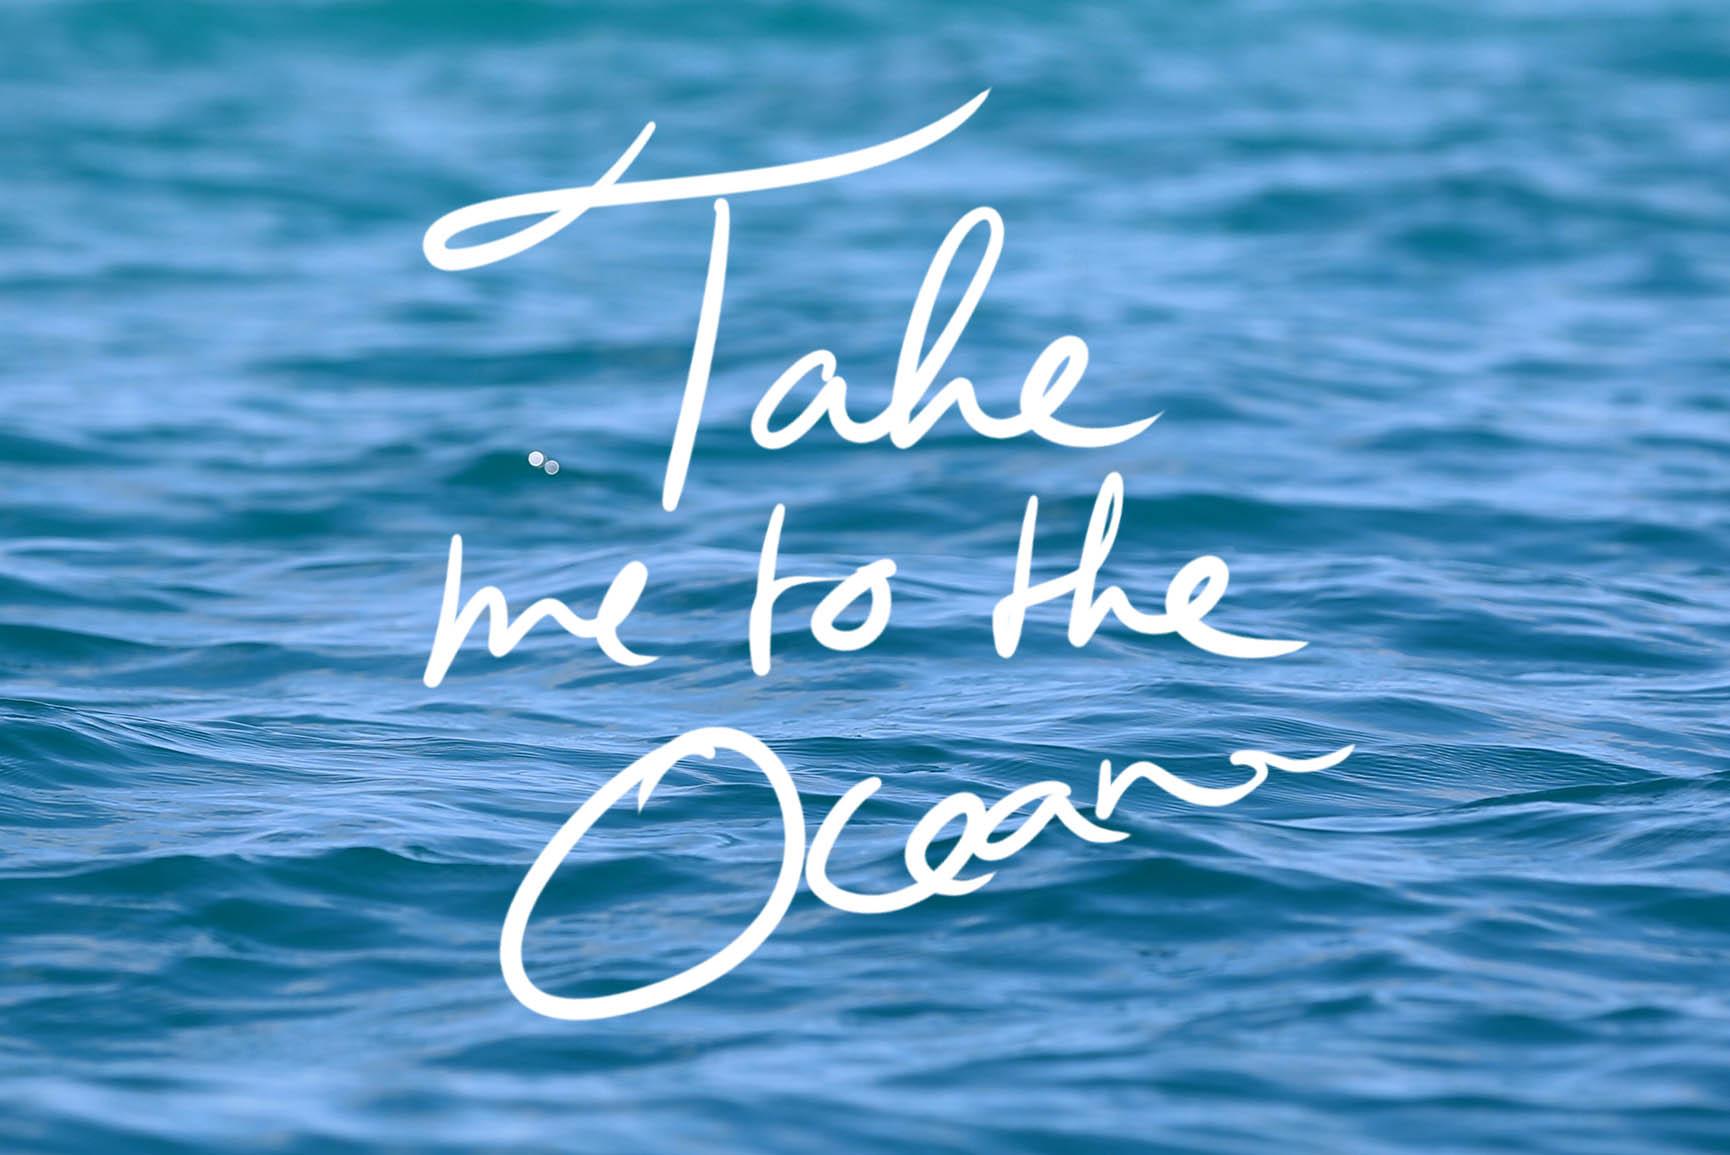 Adorable Ocean Inspired IPhone X Wallpaper